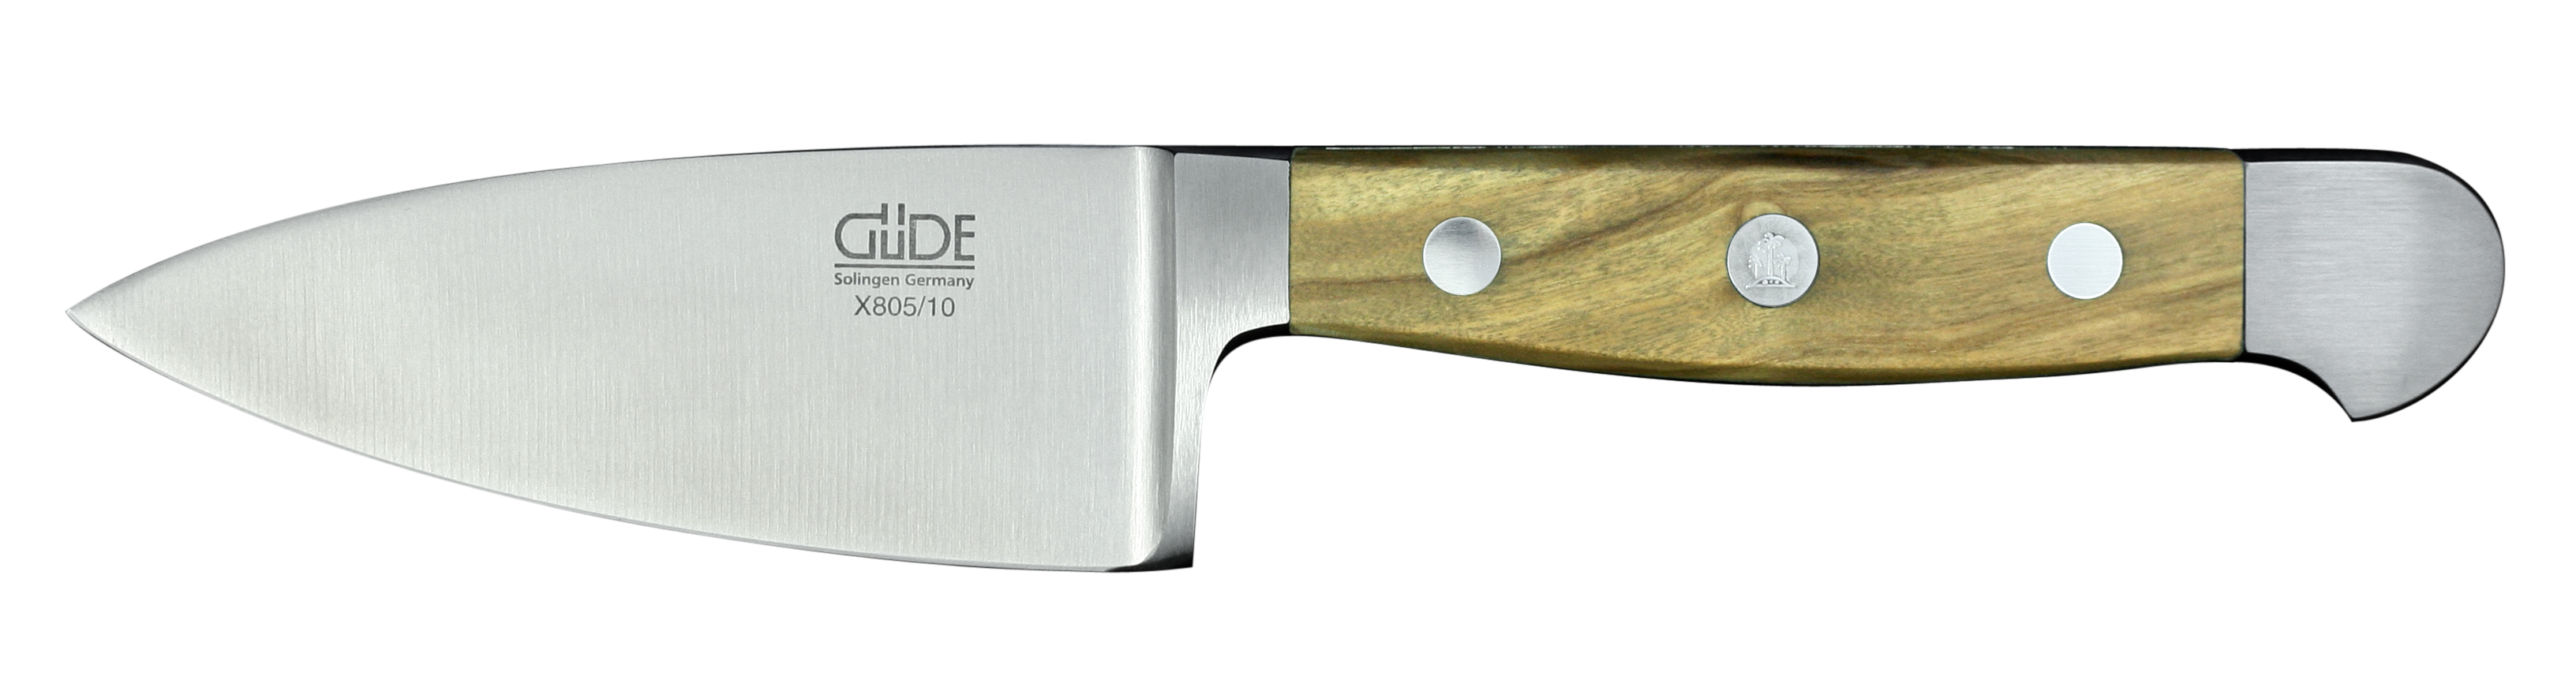 Güde Alpha Olive Hartkäsemesser 10 cm / CVM-Messerstahl mit Griffschalen aus Olivenholz